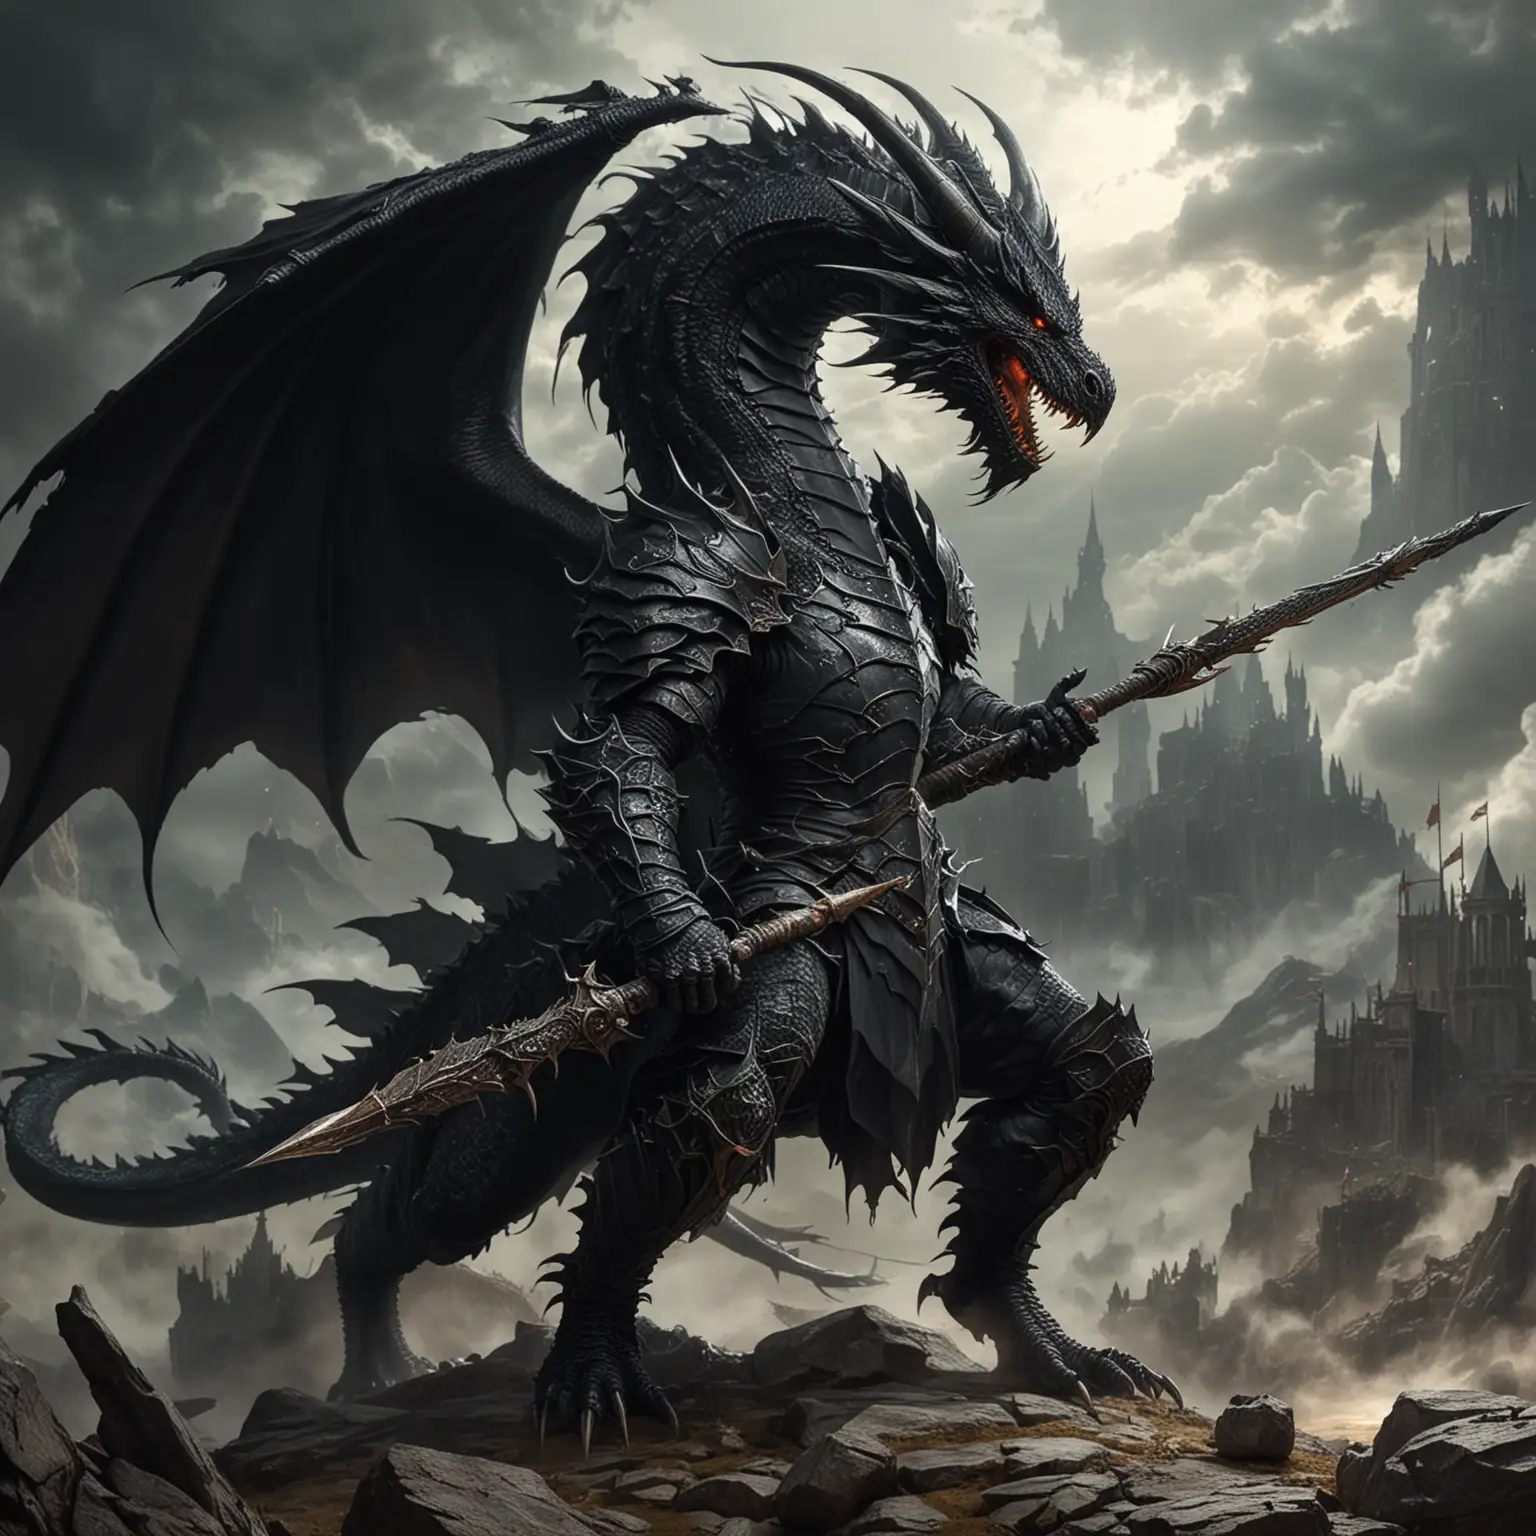 Epic Encounter Brave Knight Facing a Massive Black Dragon